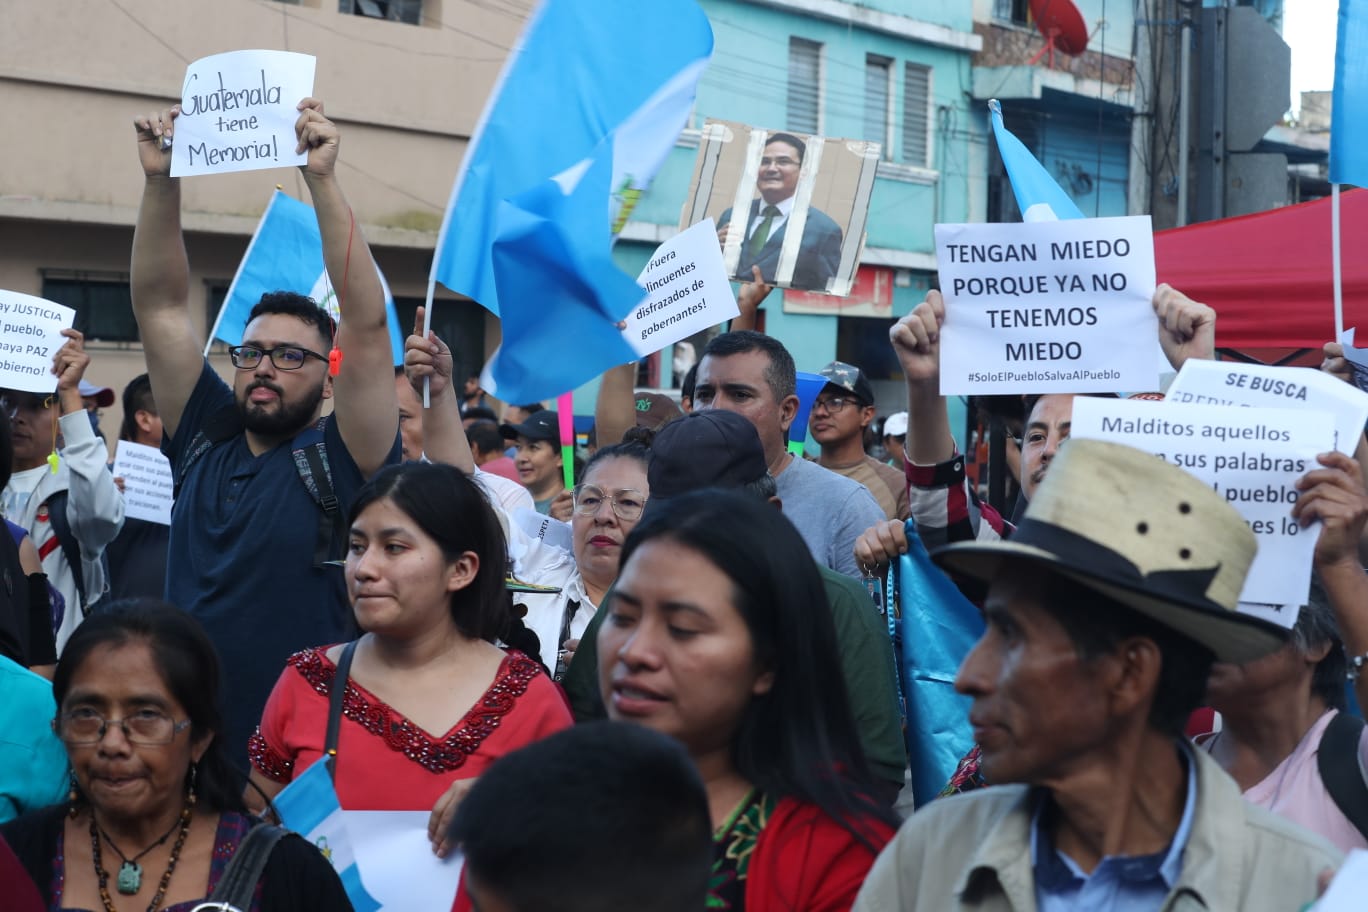 Fiscales del MP y agentes de la PNC allanaron las instalaciones del Registro de Ciudadanos en la capital, acciones que generaron protestas. (Foto Prensa Libre: Roberto López)